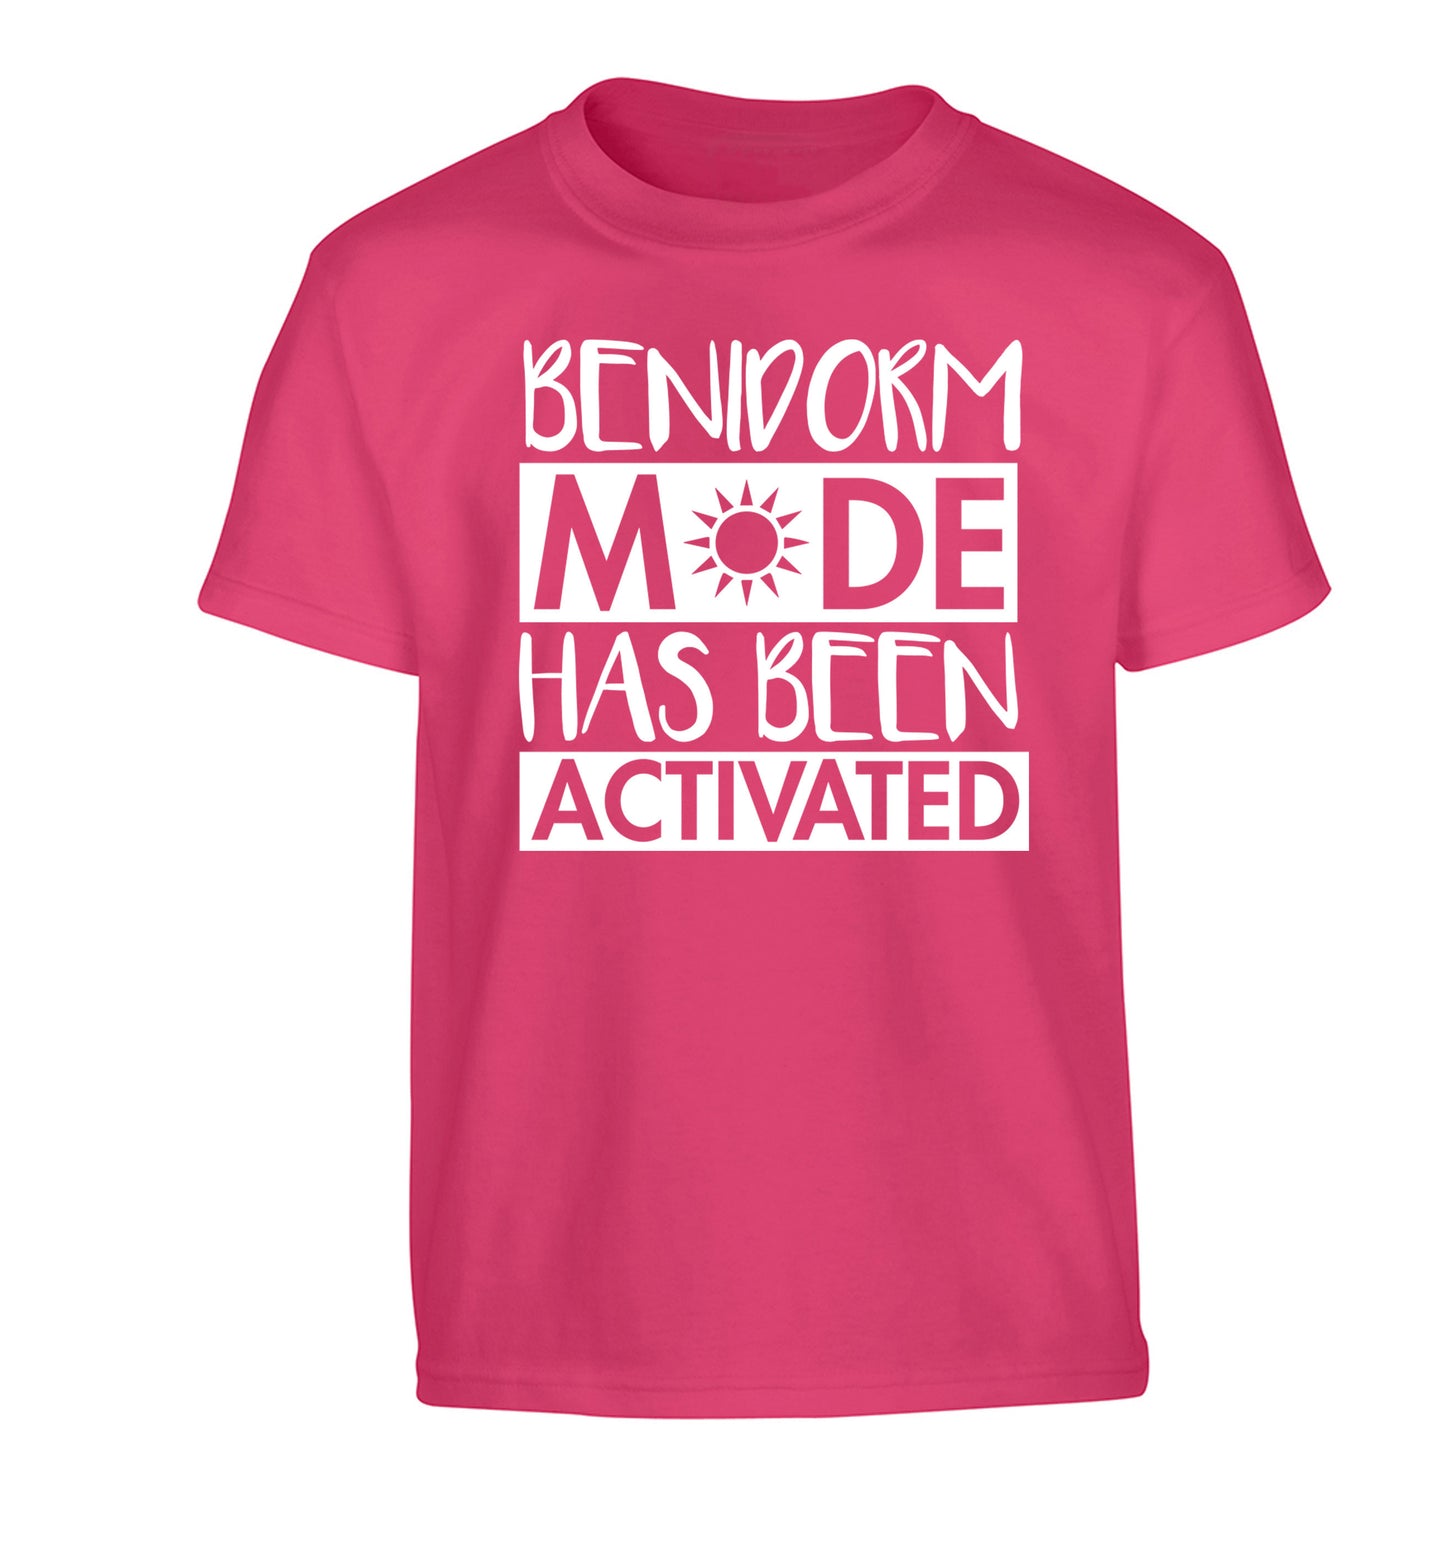 Benidorm mode has been activated Children's pink Tshirt 12-14 Years